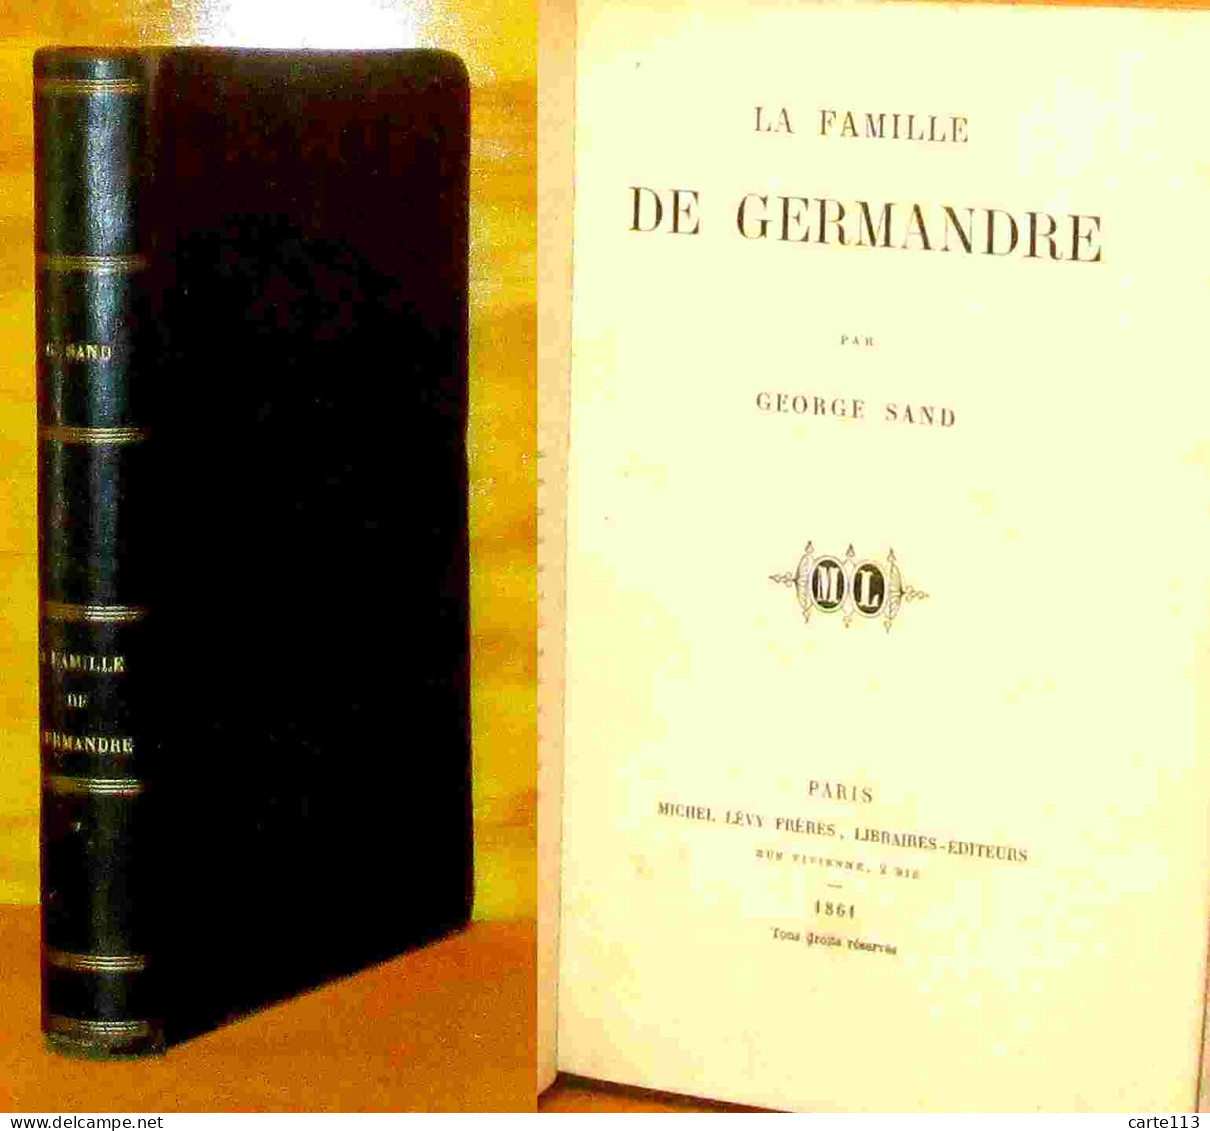 SAND George - LA FAMILLE DE GERMANDRE - 1801-1900